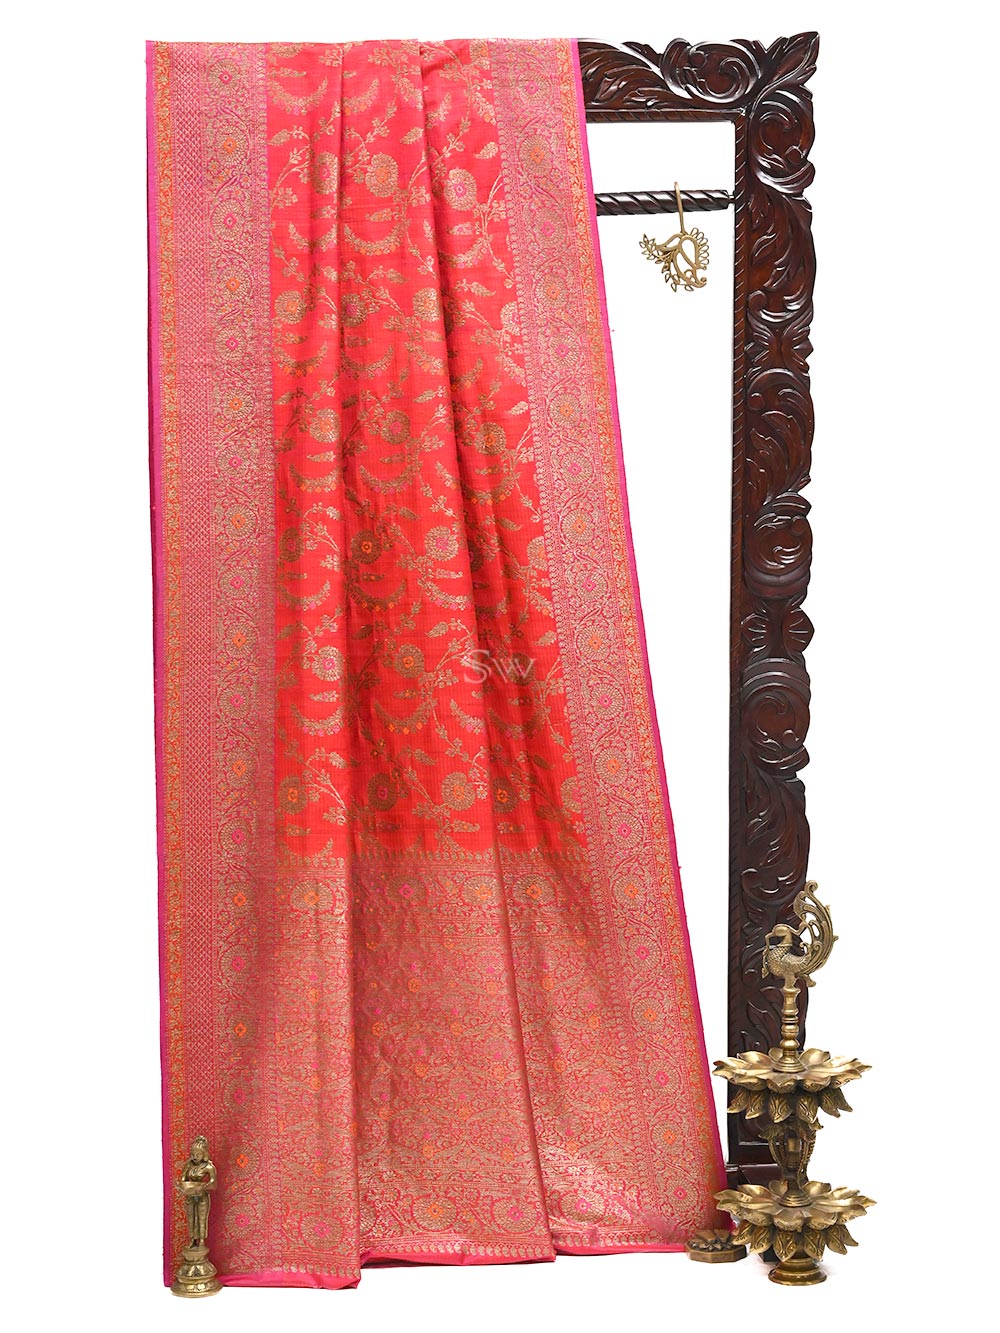 Red Magenta Meenakari Jaal Dupion Silk Handloom Banarasi Saree - Sacred Weaves